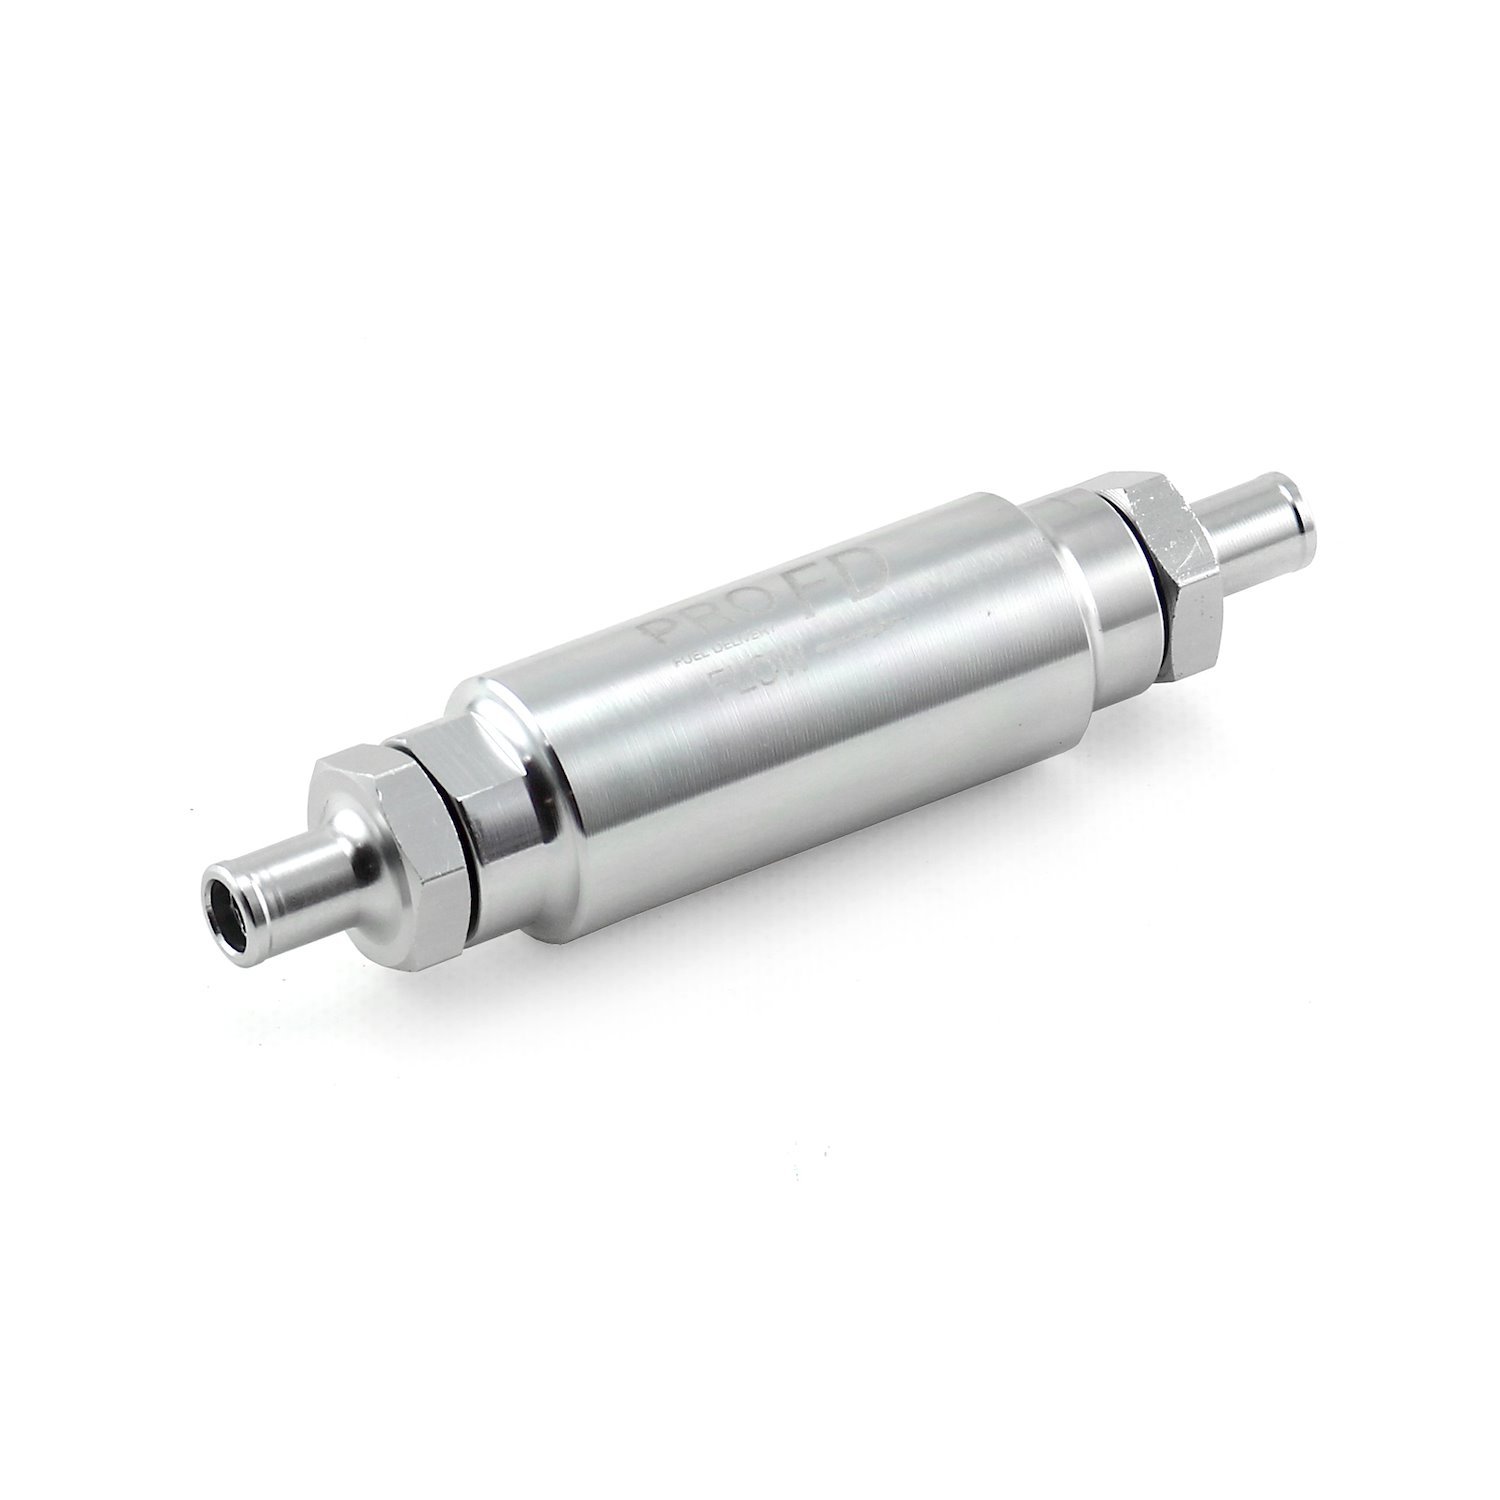 Billet Aluminum Inline Fuel Filter Inlet/Outlet Ports: 3/8" Hose Nipple